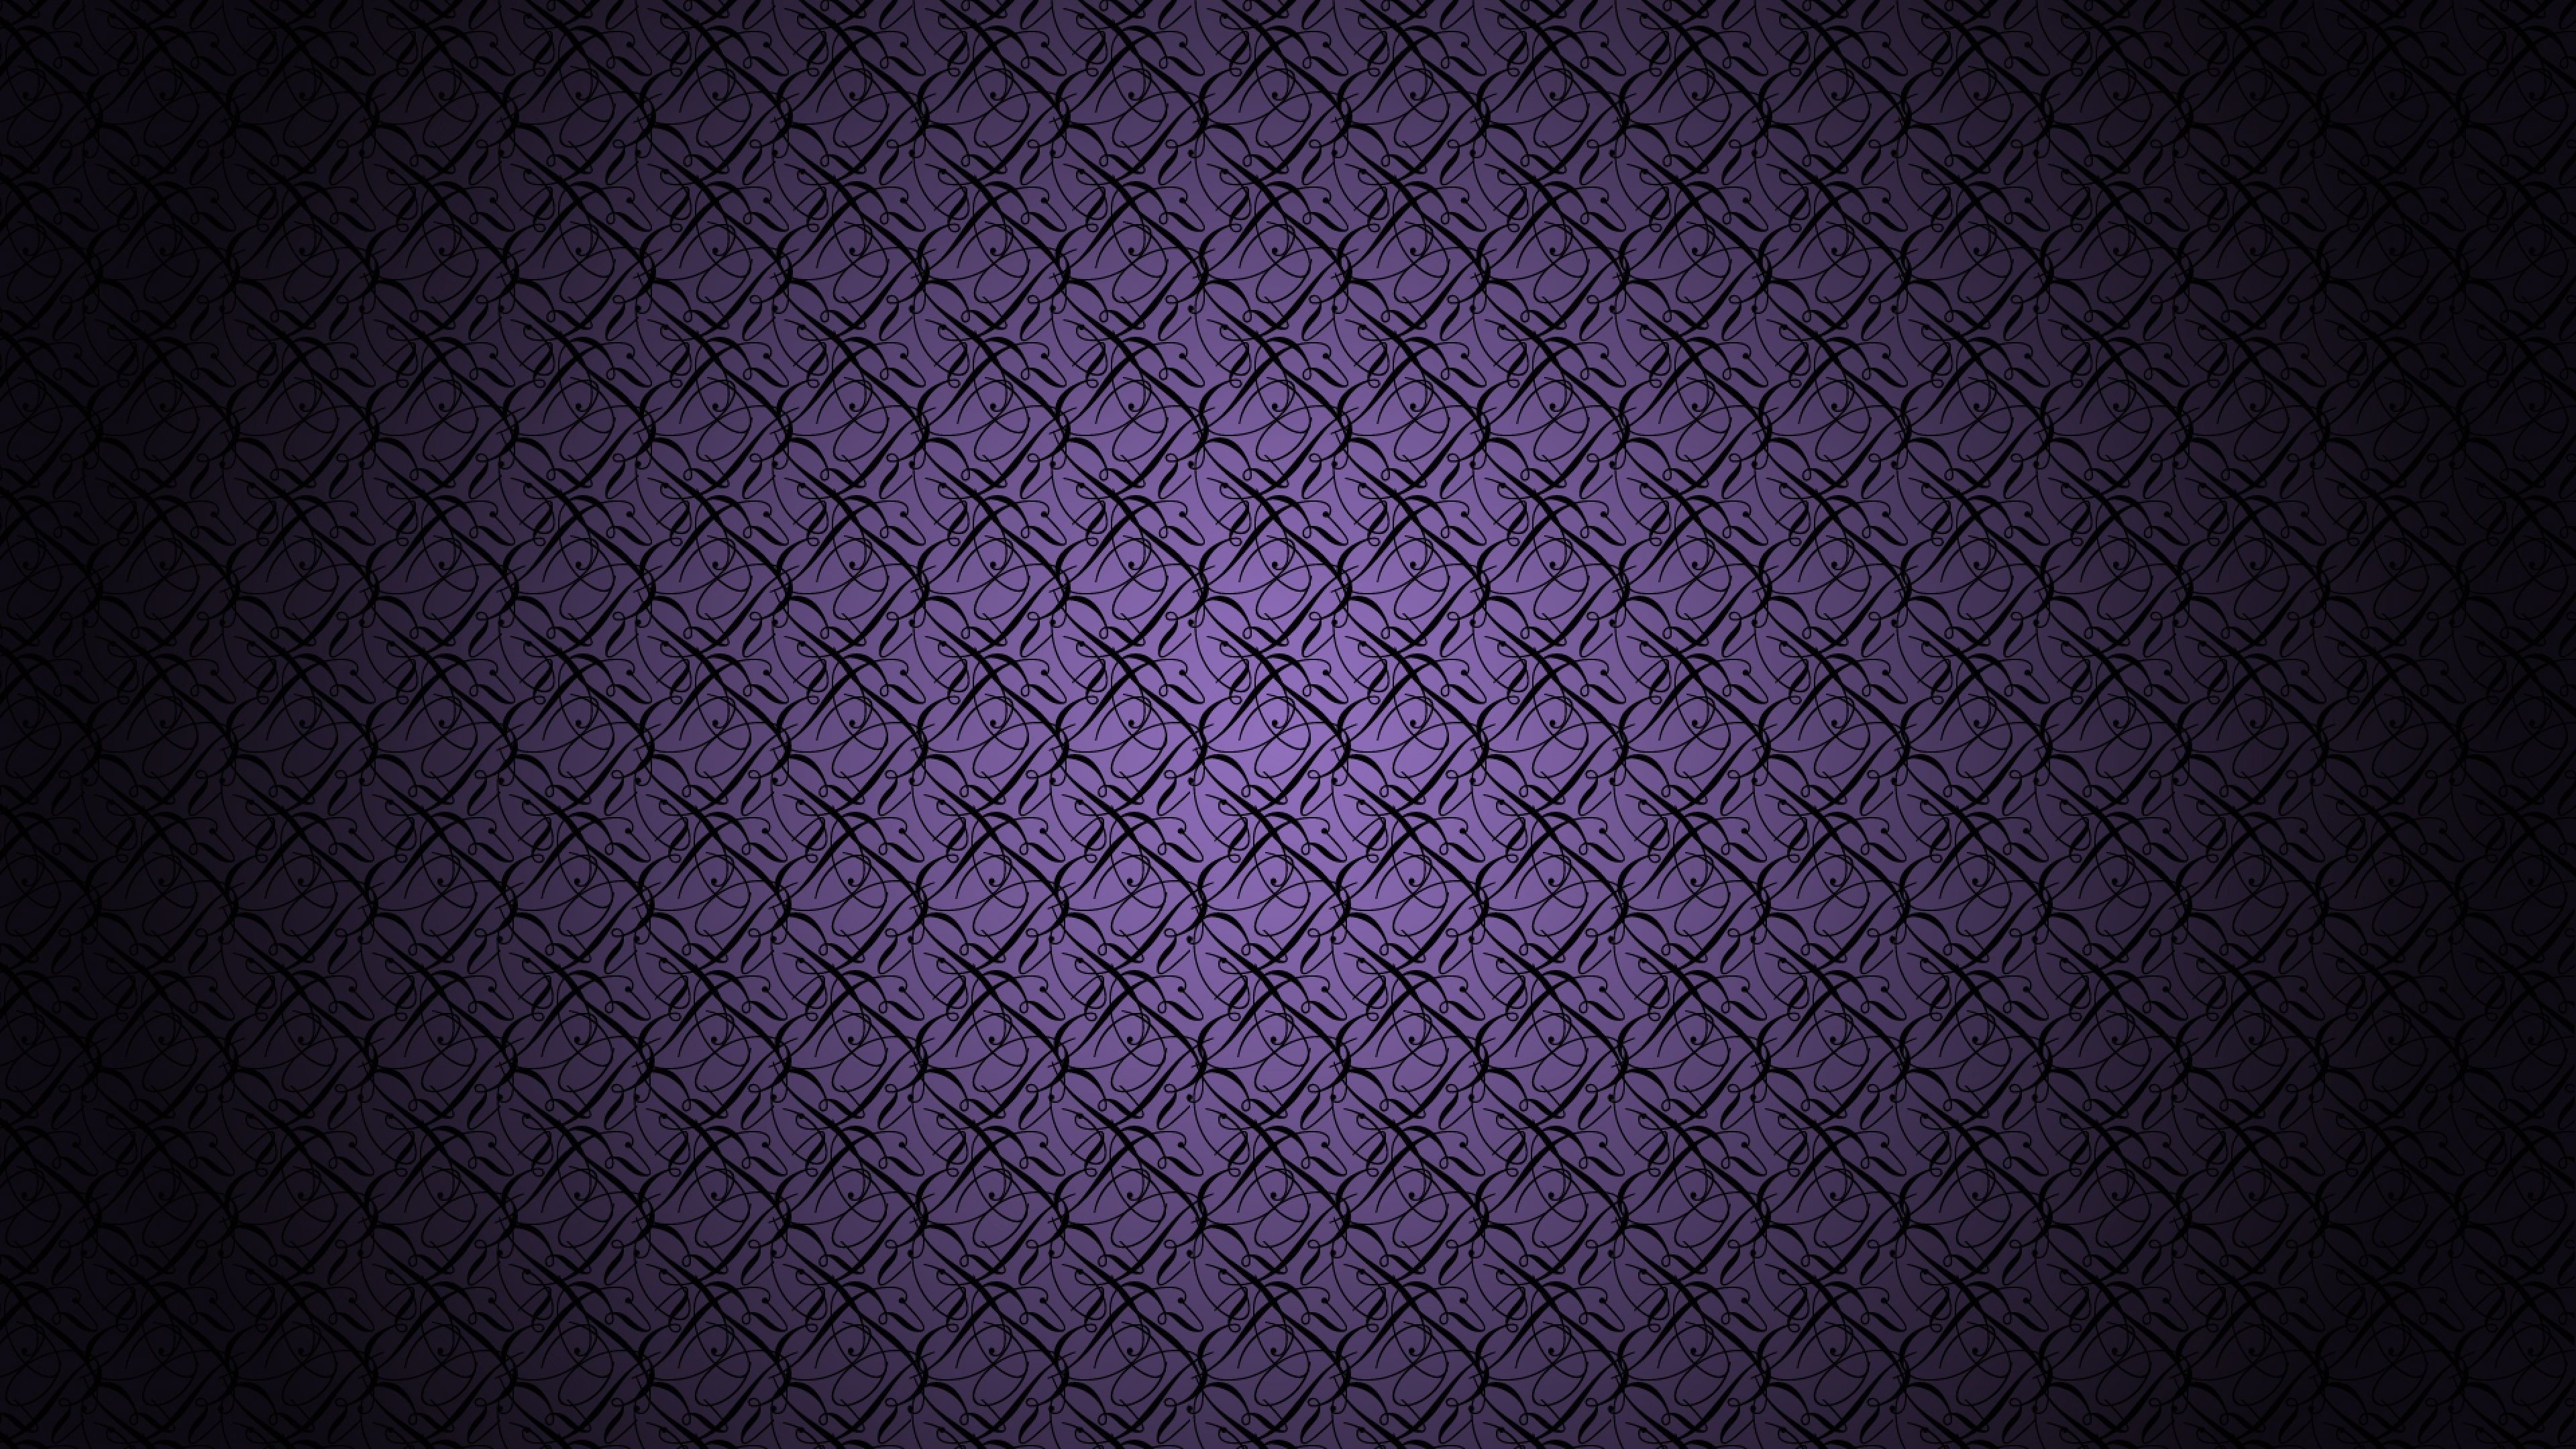 3840x2160 Tim Burton Computer Wallpapers, Desktop Backgrounds Desktop Background